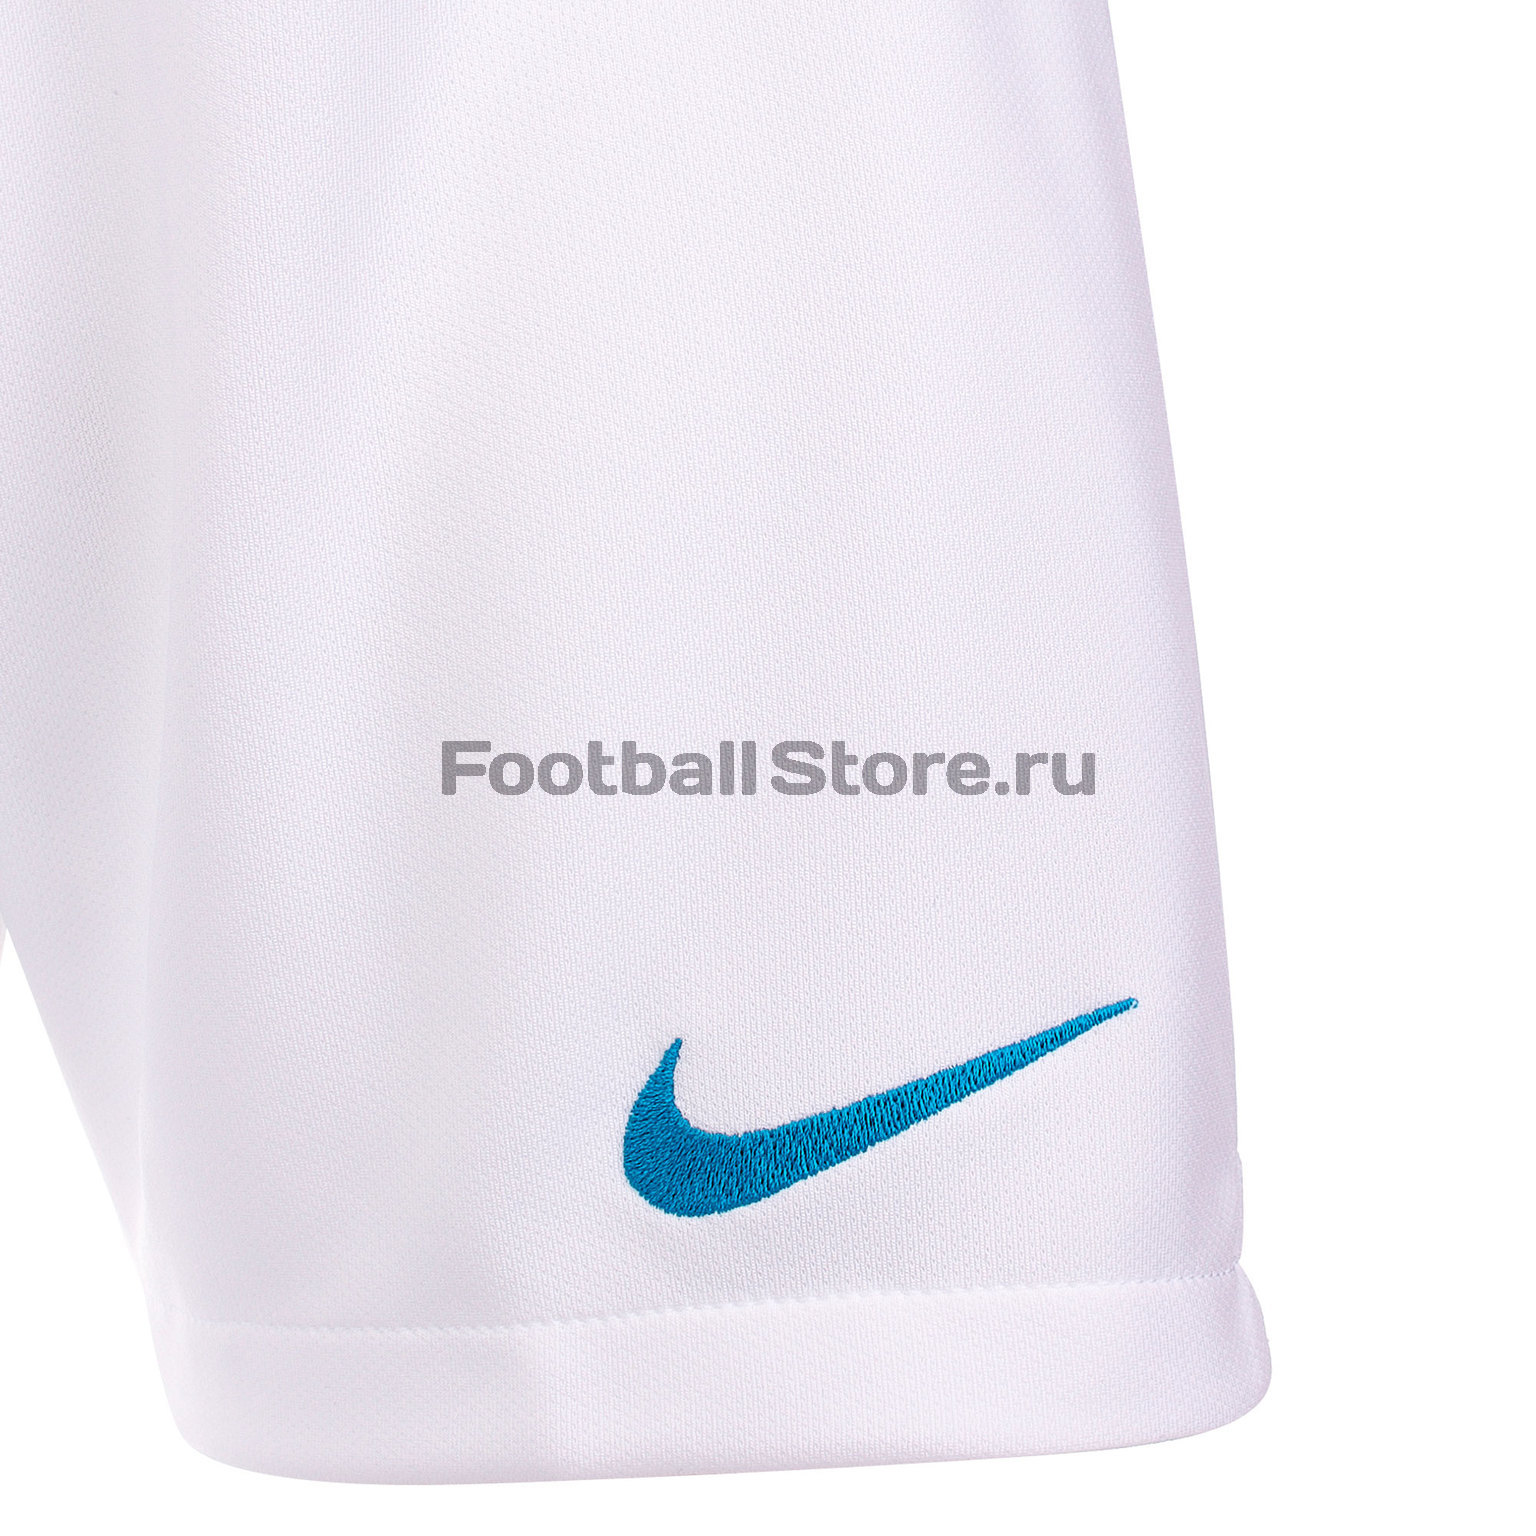 Шорты выездные подростковые Nike Zenit сезон 2019/20